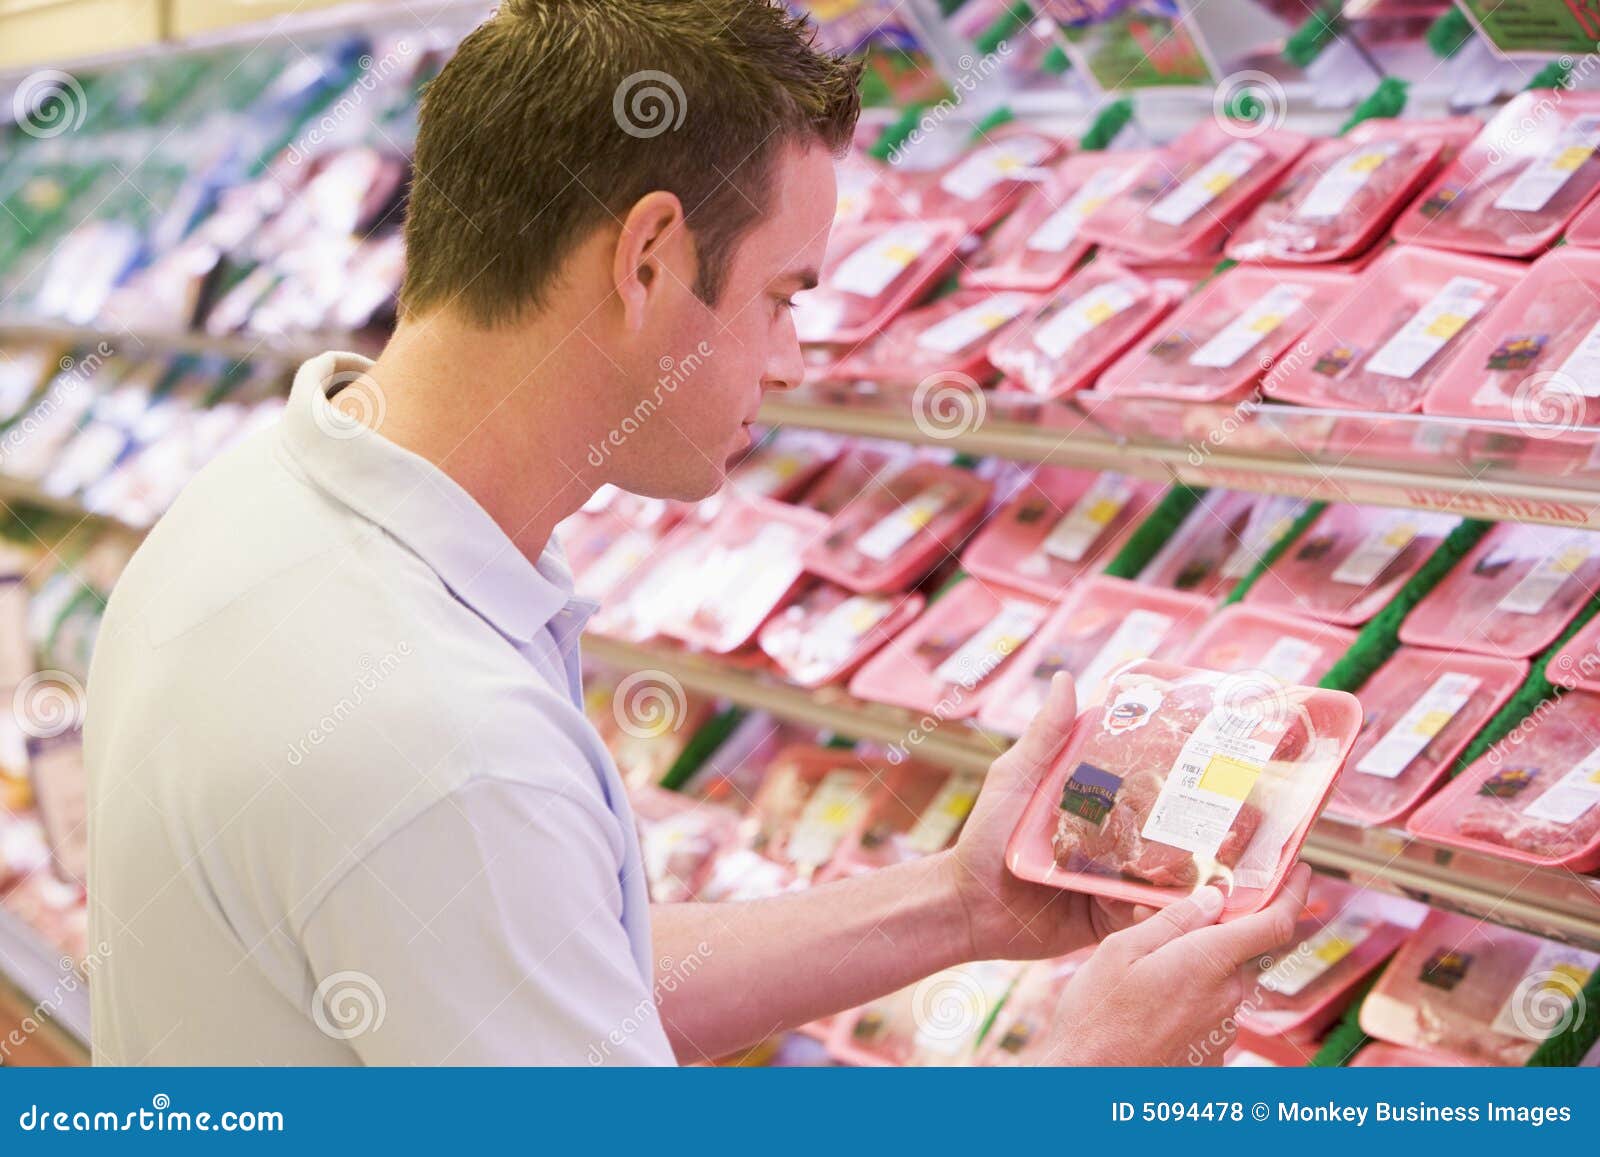 man buying fresh meat